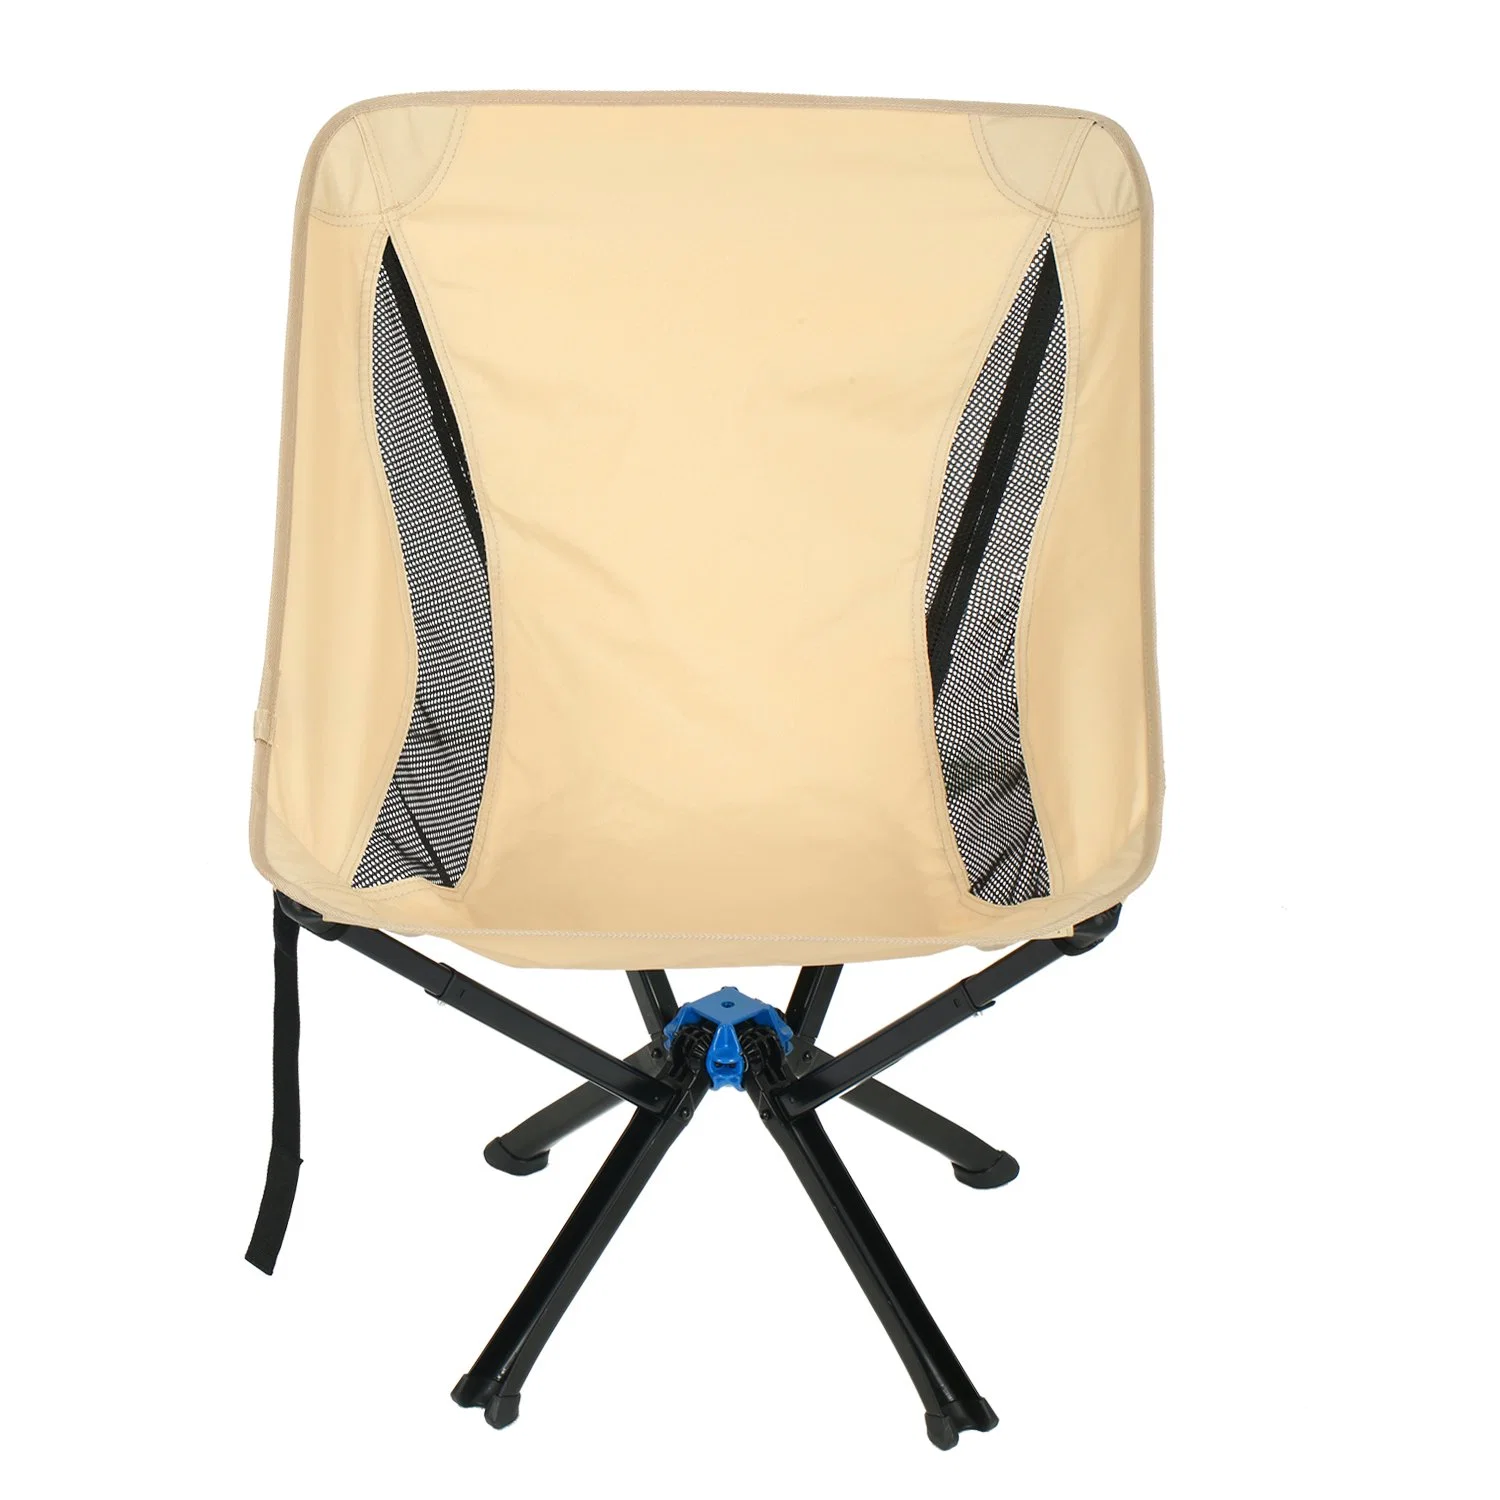 كرسي التخييم المحمول بحجم كبير - كرسي قابل للطي محمول ومتعدد الاستخدامات للبالغين.